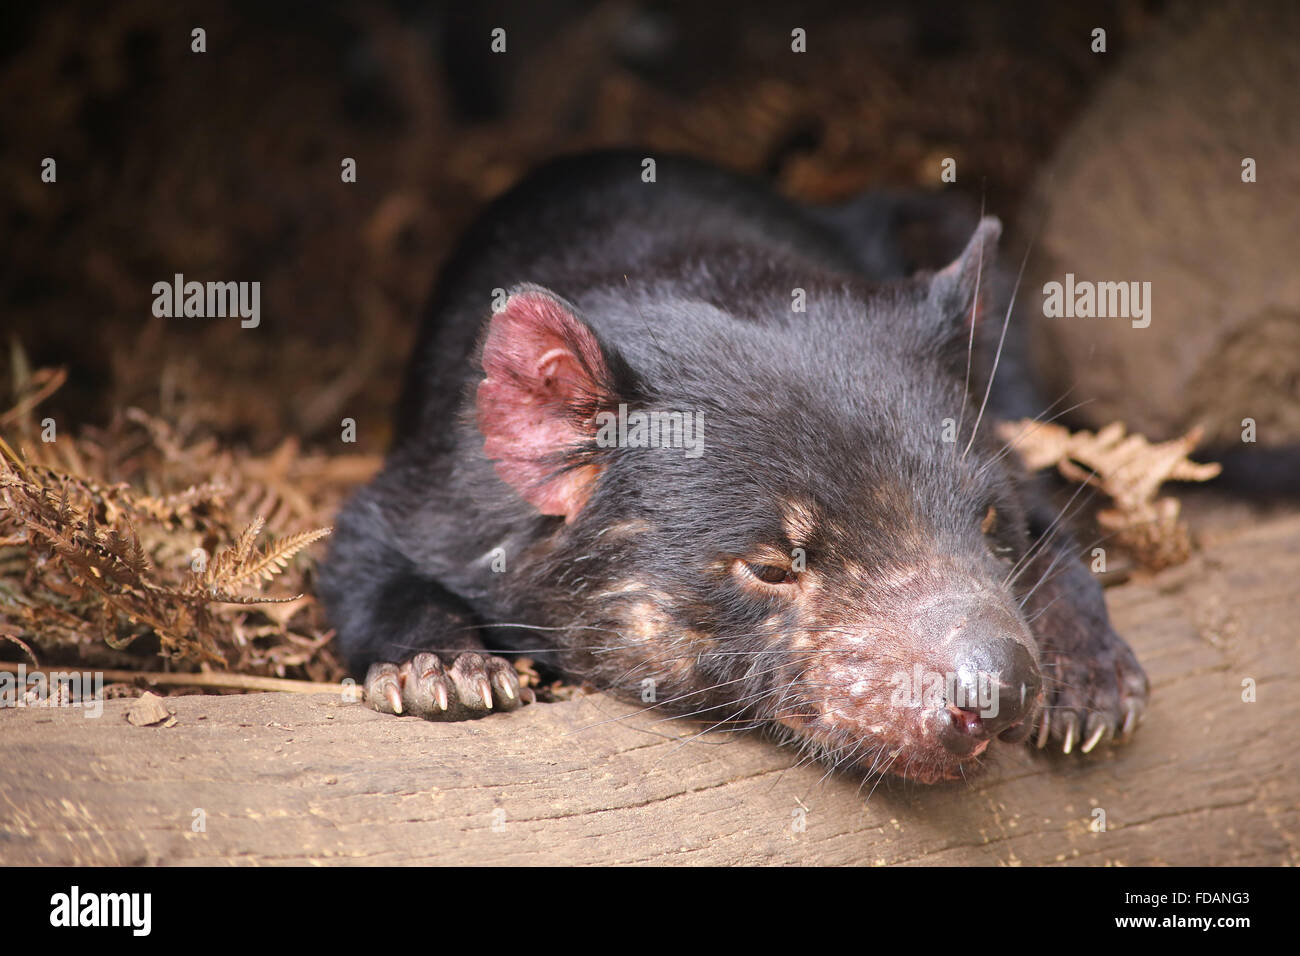 Tasmanian Devil at wildlife sanctuary in Tasmania Stock Photo